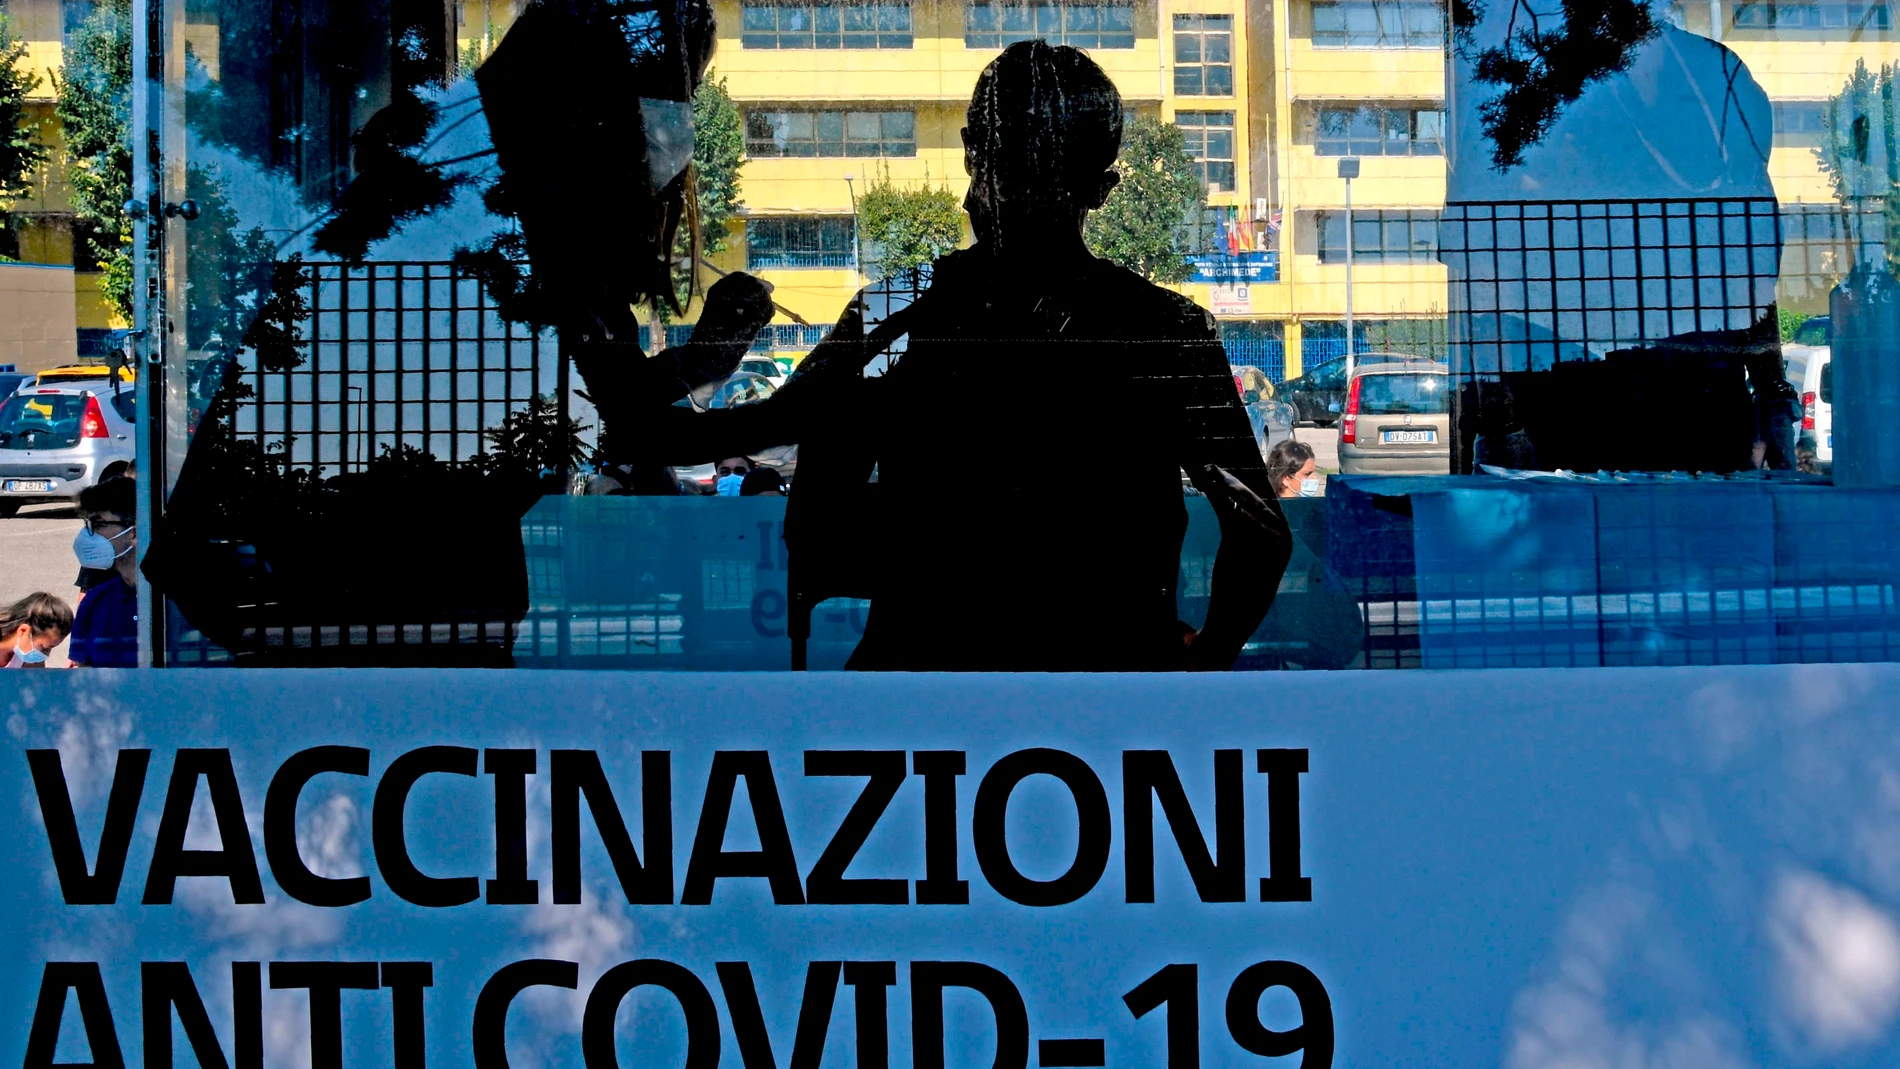 Italia castiga sin empleo y sueldo a cientos de sanitarios por no vacunarse